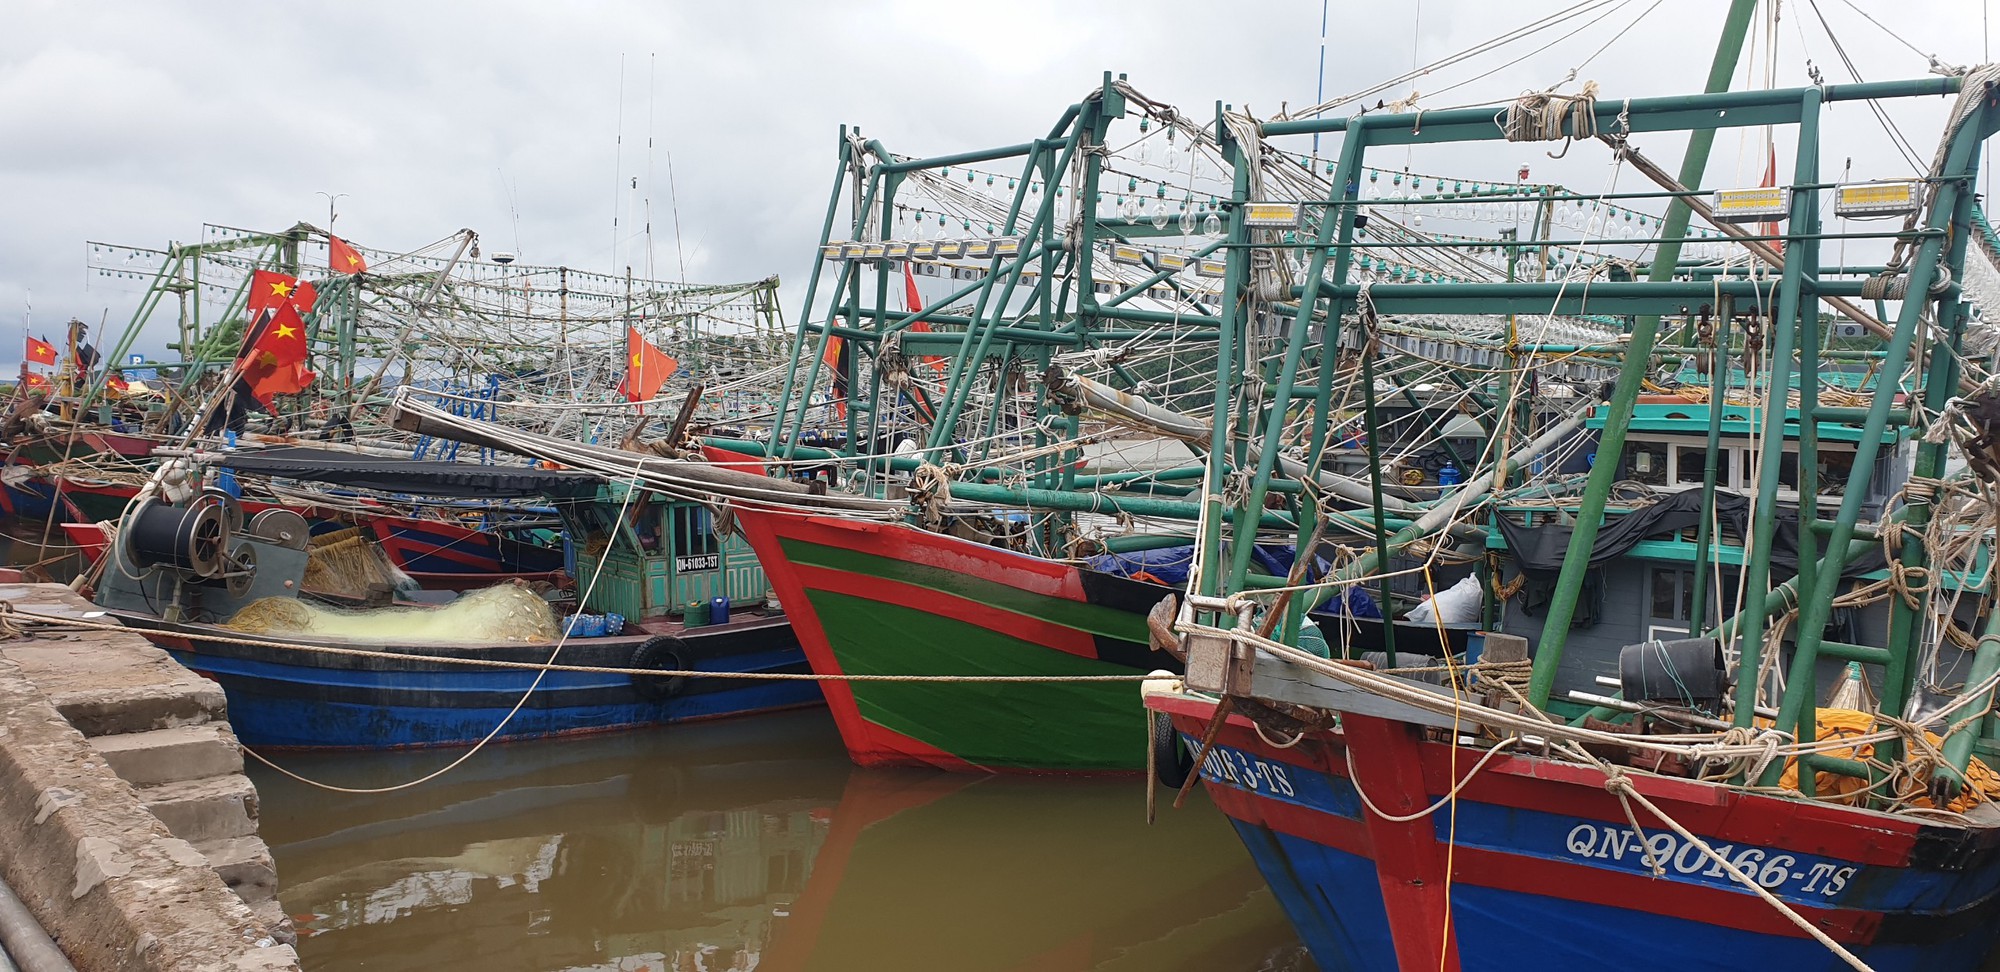 Quạnh hiu làng biển Tiến Tới ở Quảng Ninh - Ảnh 1.